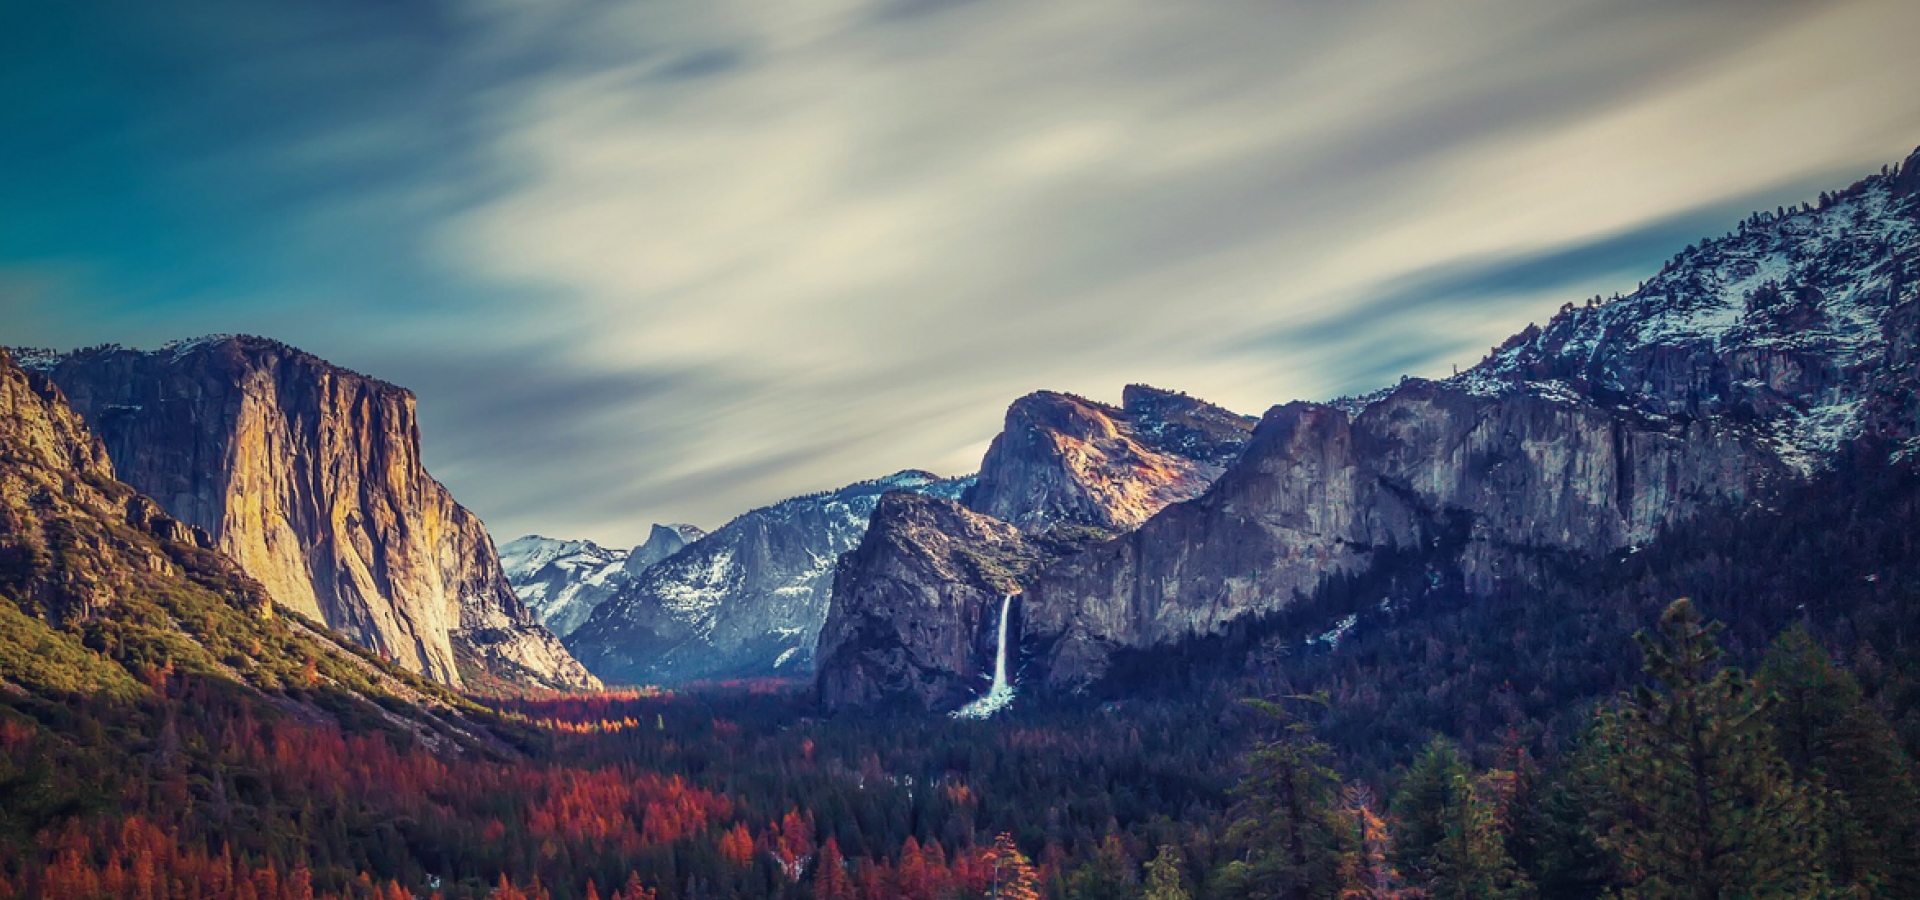 Yosemite_View_1280x550